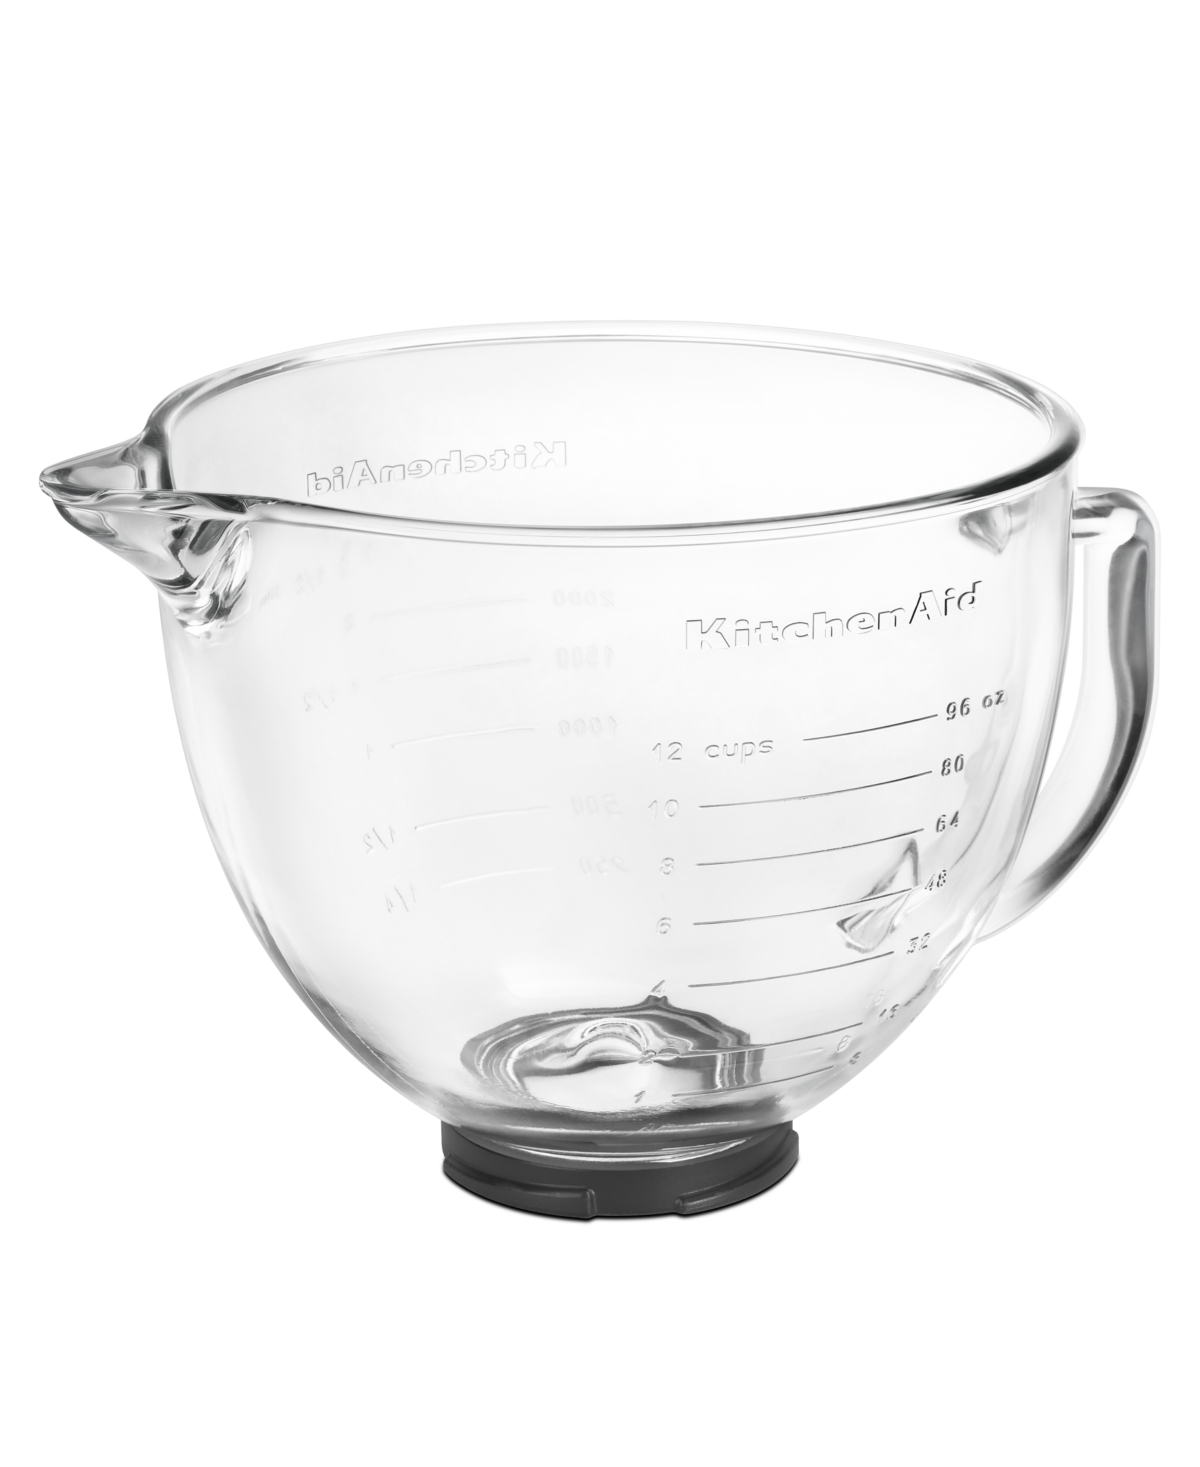 Kitchenaid 5 Qt. Glass Stand Mixer Bowl K5gb In Clear